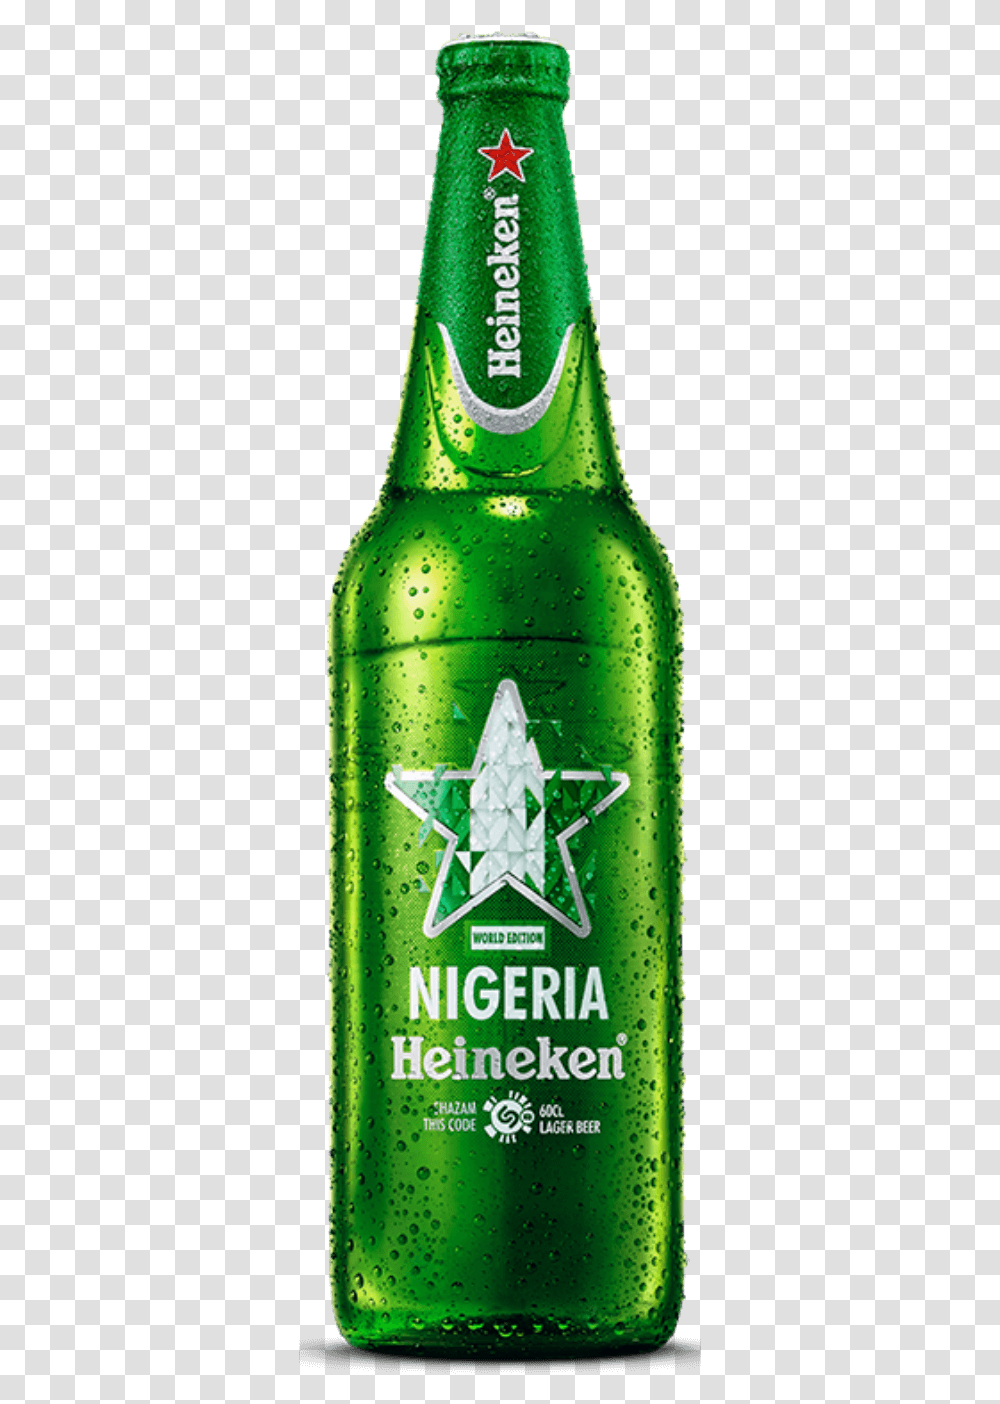 Connected Packaging, Green, Bottle, Beverage, Drink Transparent Png